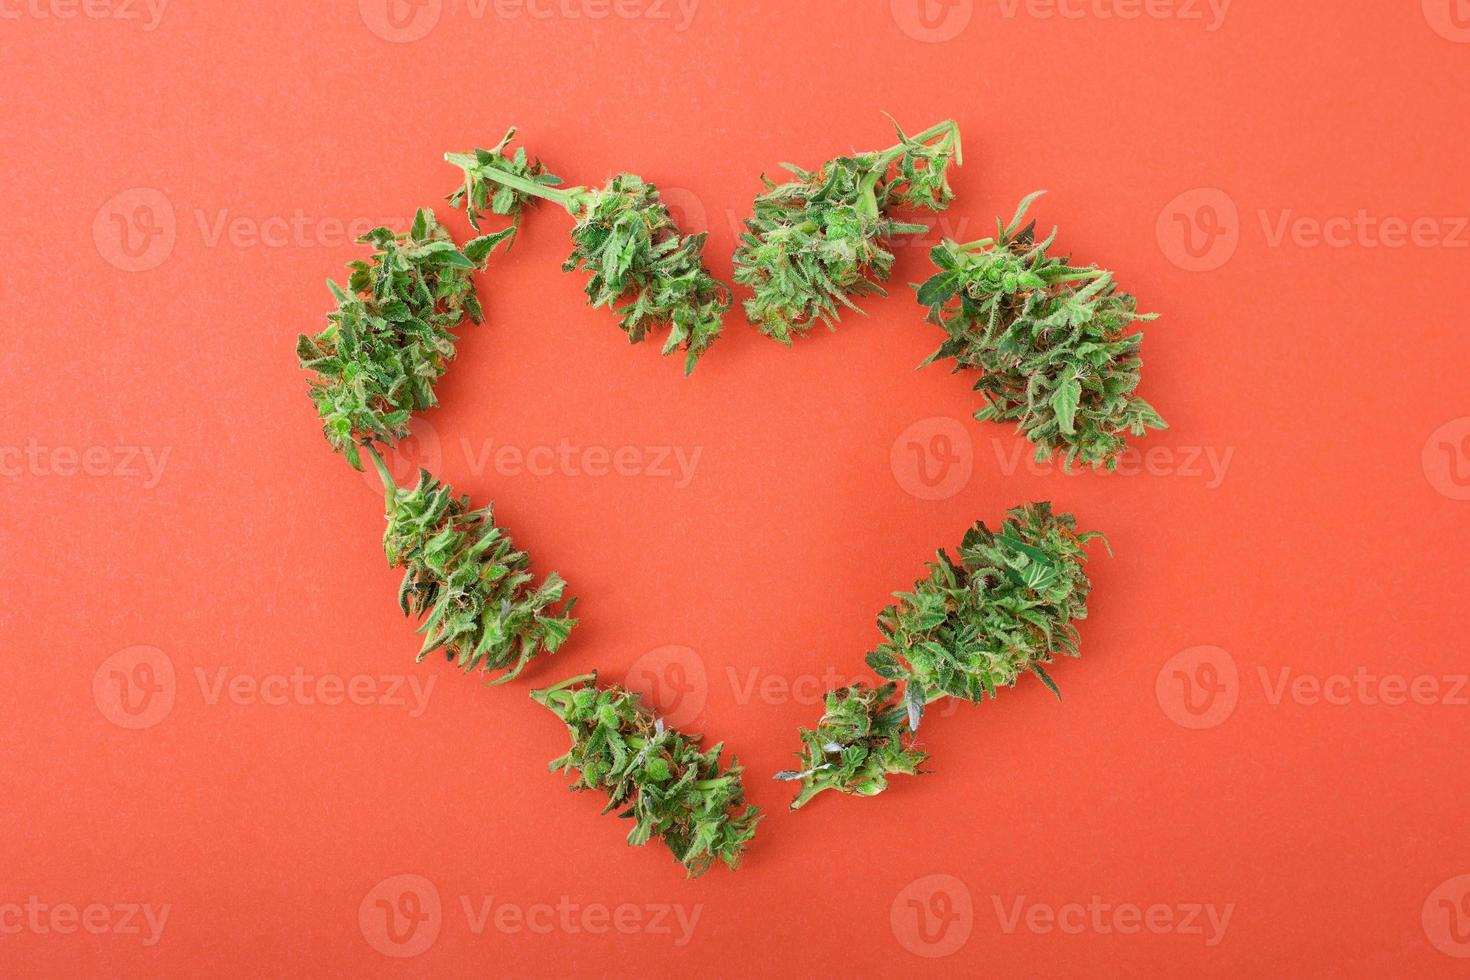 boccioli di cannabis a forma di cuore foto